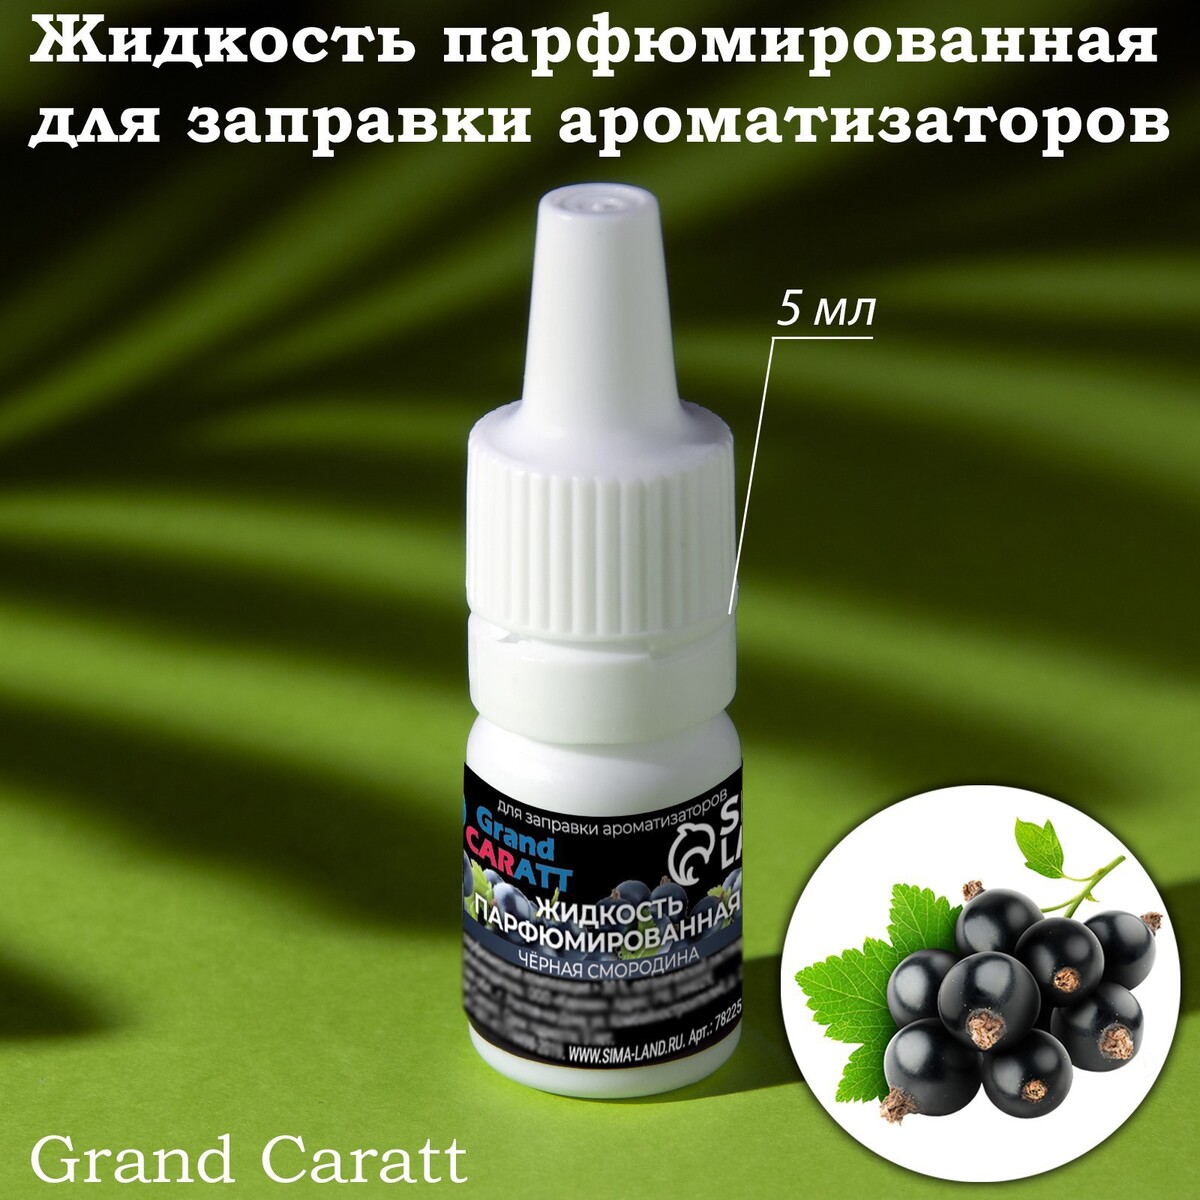 Жидкость парфюмированная grand caratt, для заправки ароматизаторов, черная смородина, 5 мл инсектицид беретта от колорадского жука жидкость 5 мл щелково агрохим